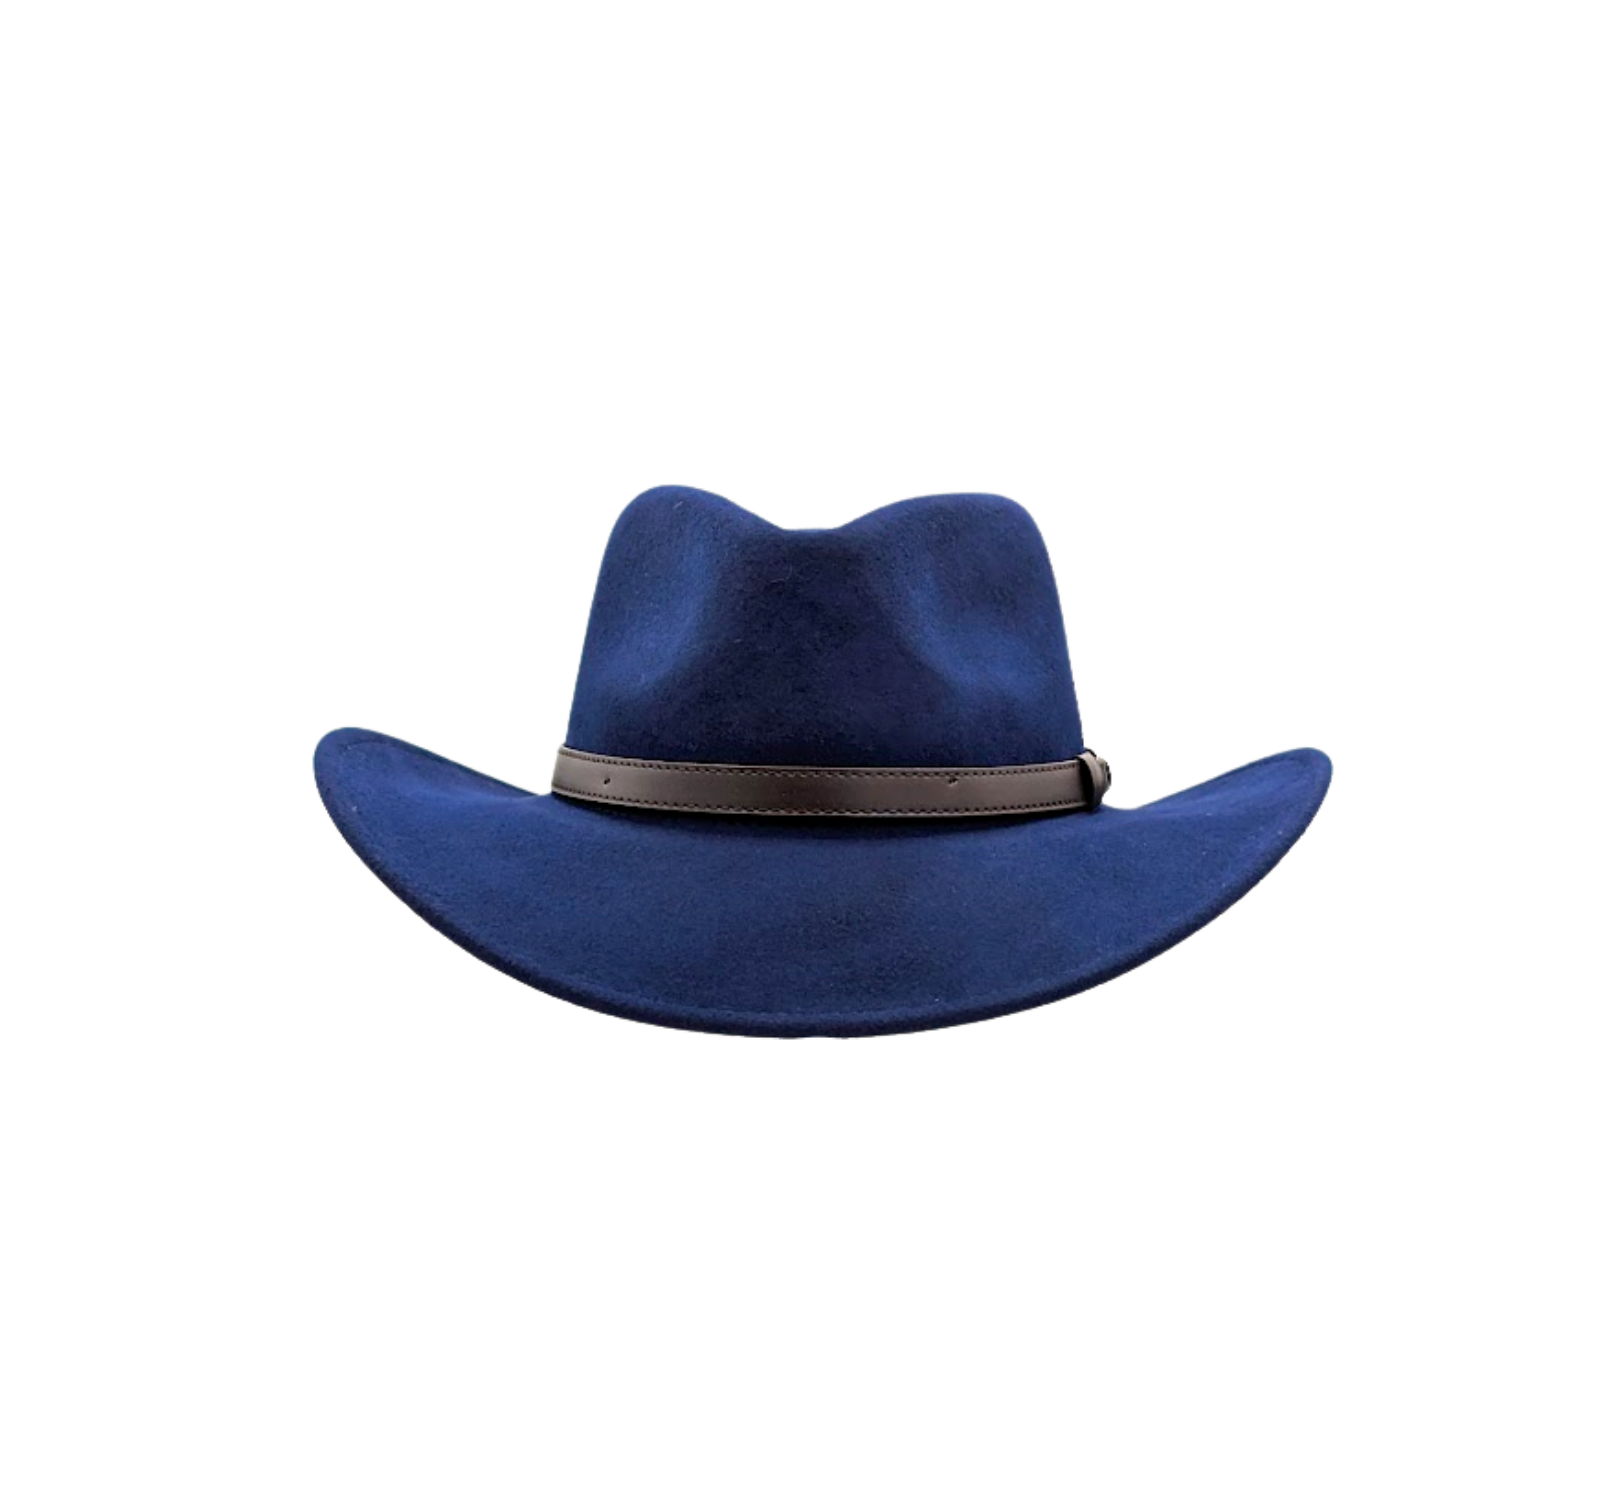 Stansmore Authentic Cowboy Hat